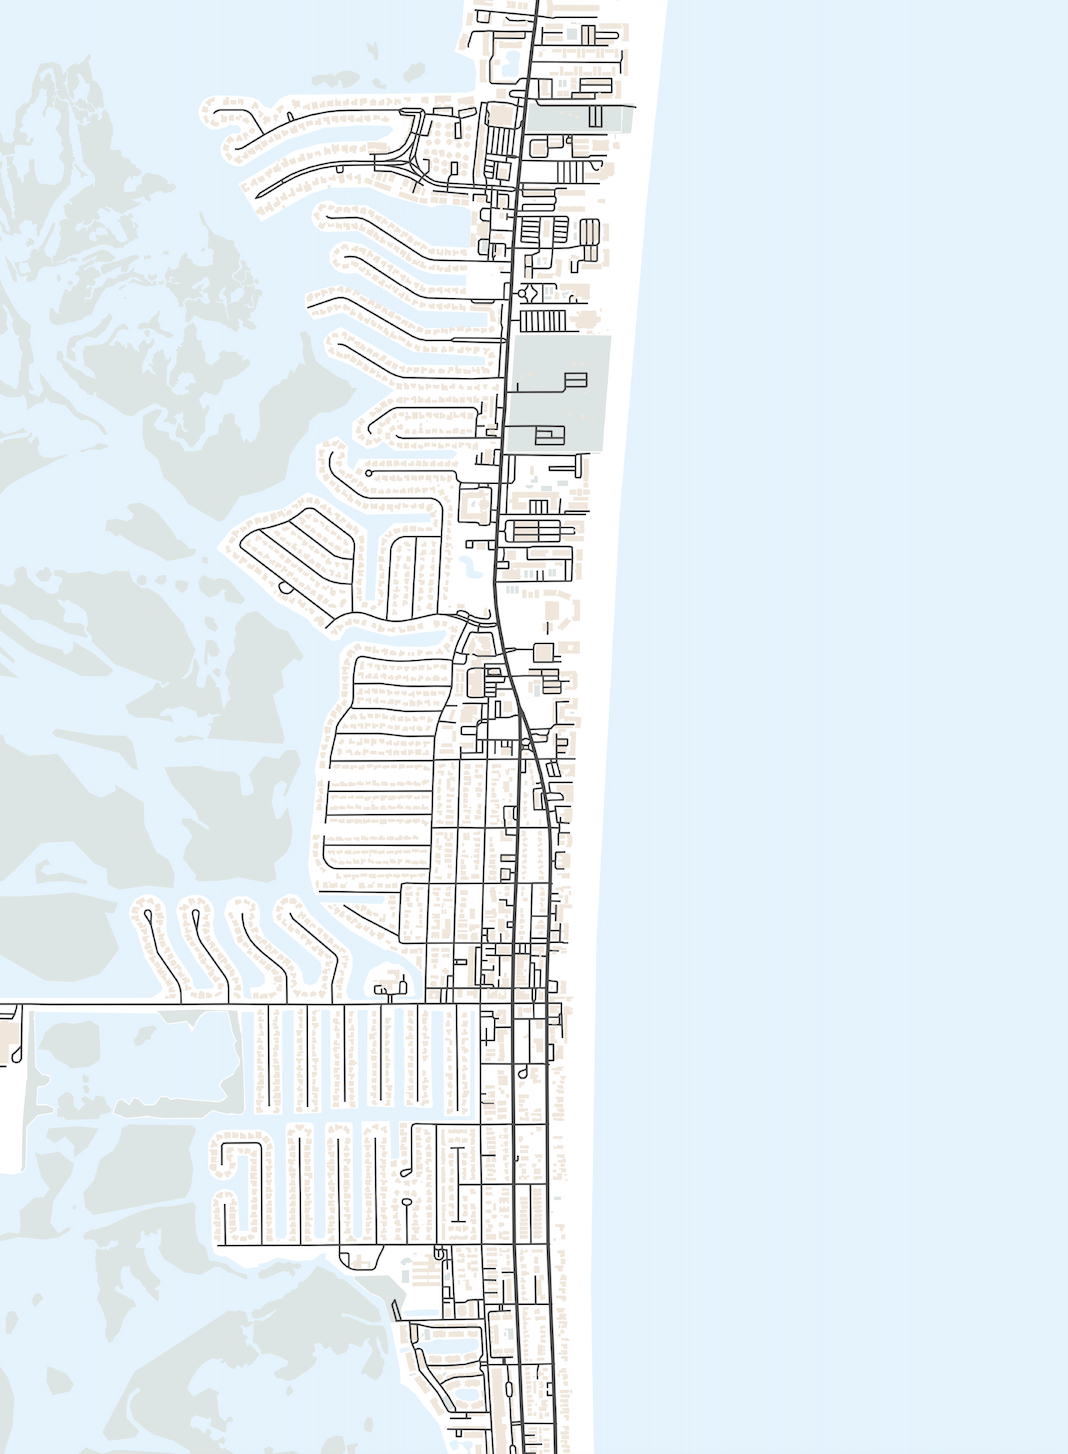 Cocoa Beach Map Print